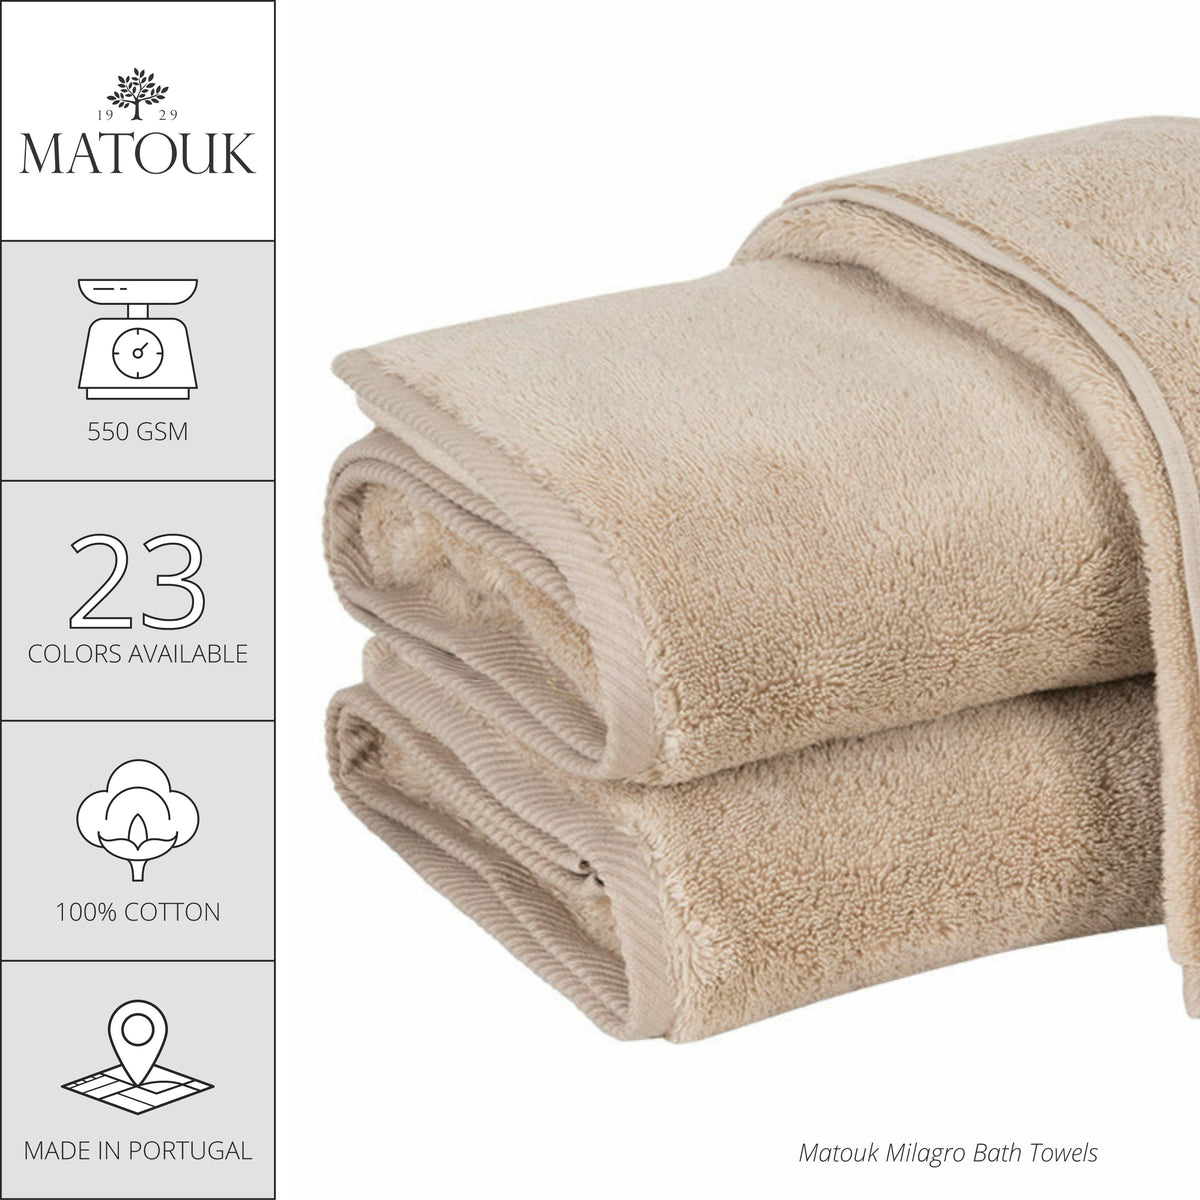 Matouk Milagro Bath Towels and Mats - Hot Pink